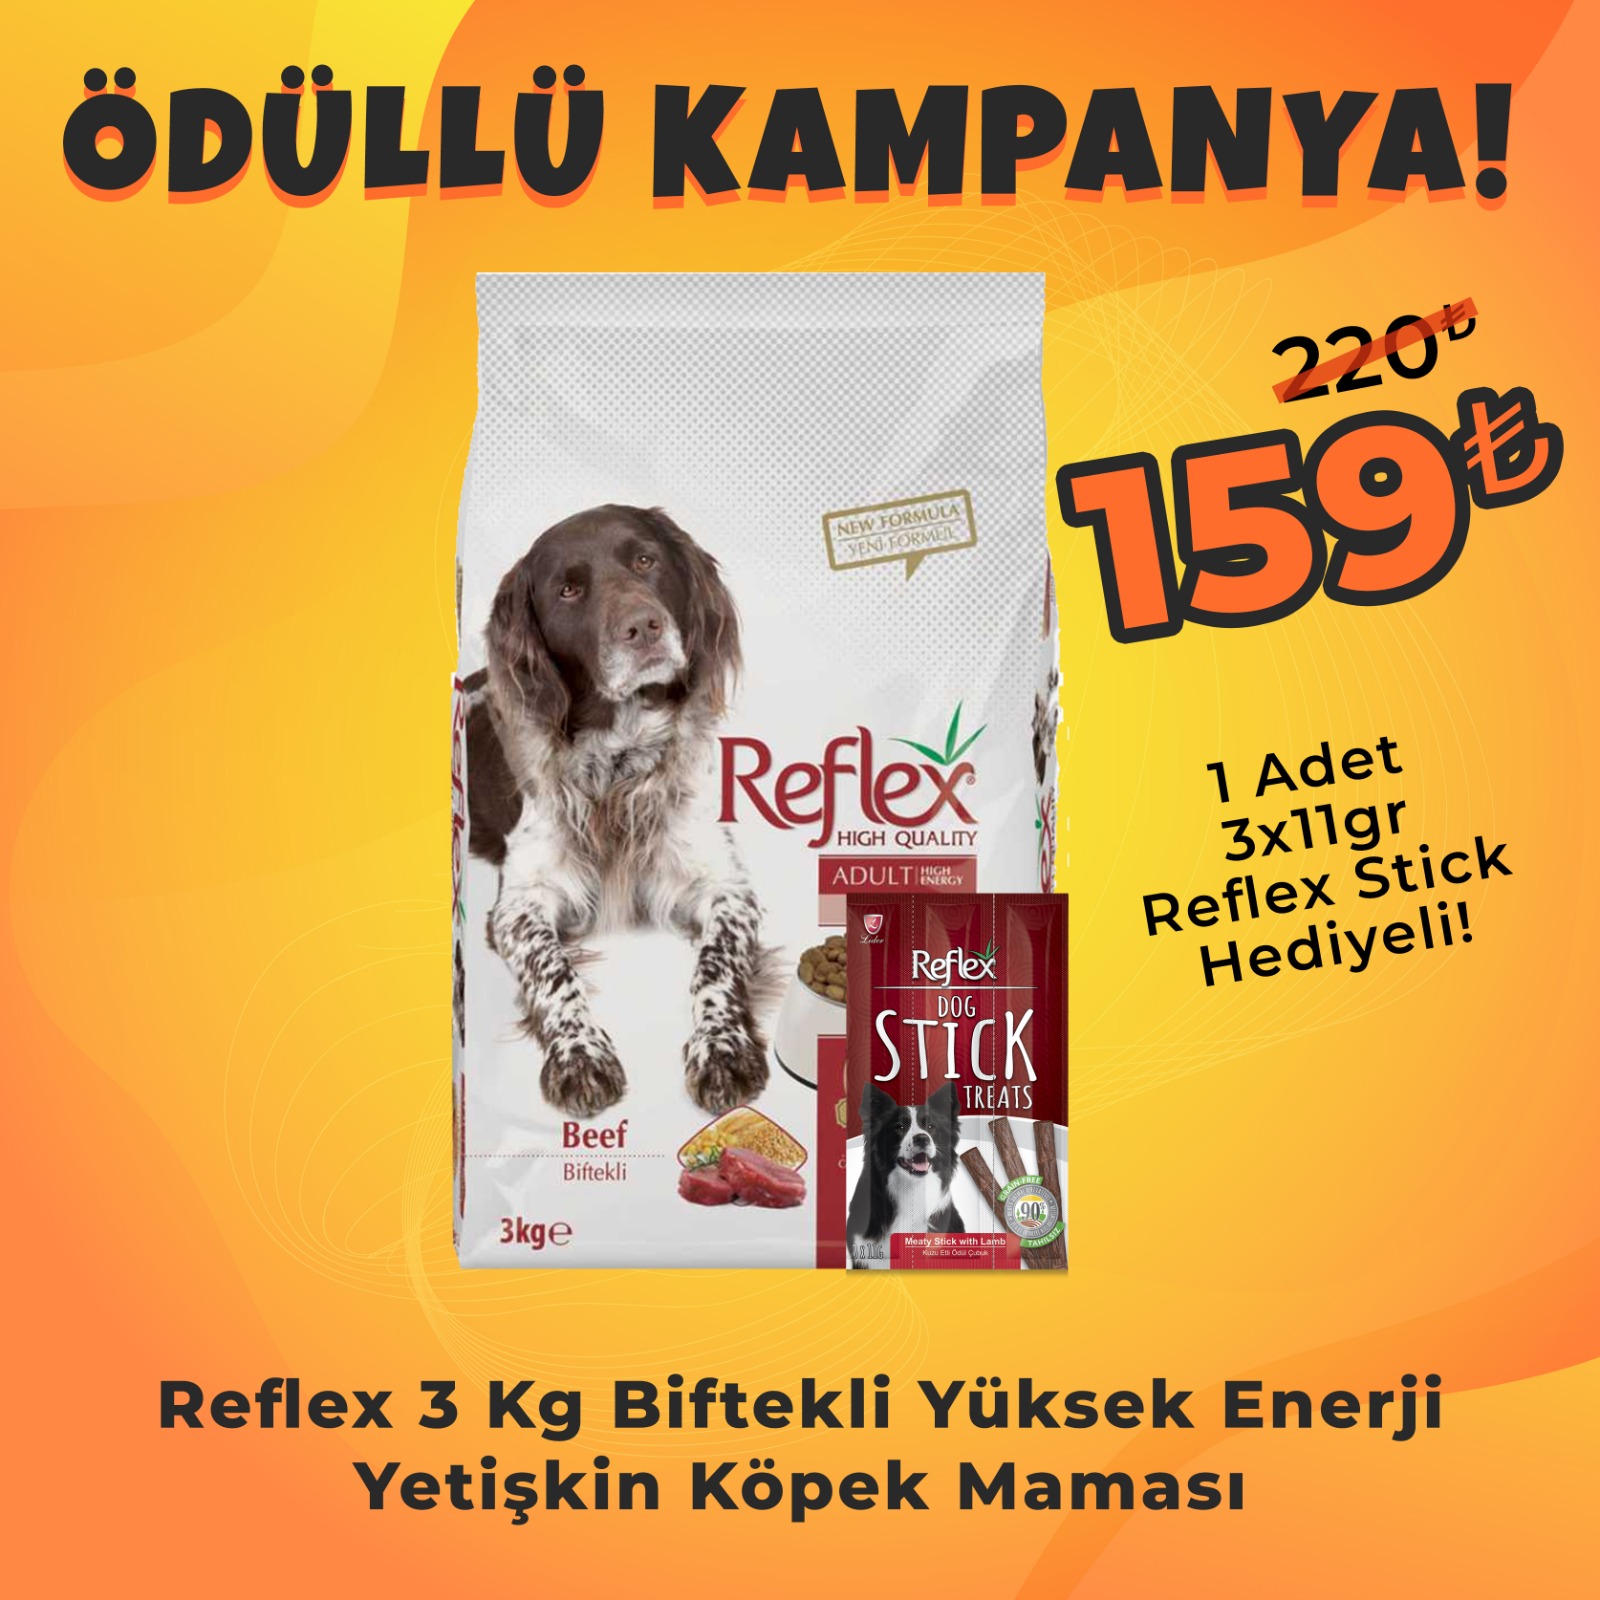 Reflex Biftekli Yüksek Enerjili Köpek Maması 3 Kg + Reflex Köpek Stick Ödül Hediyeli 3x11 Gr